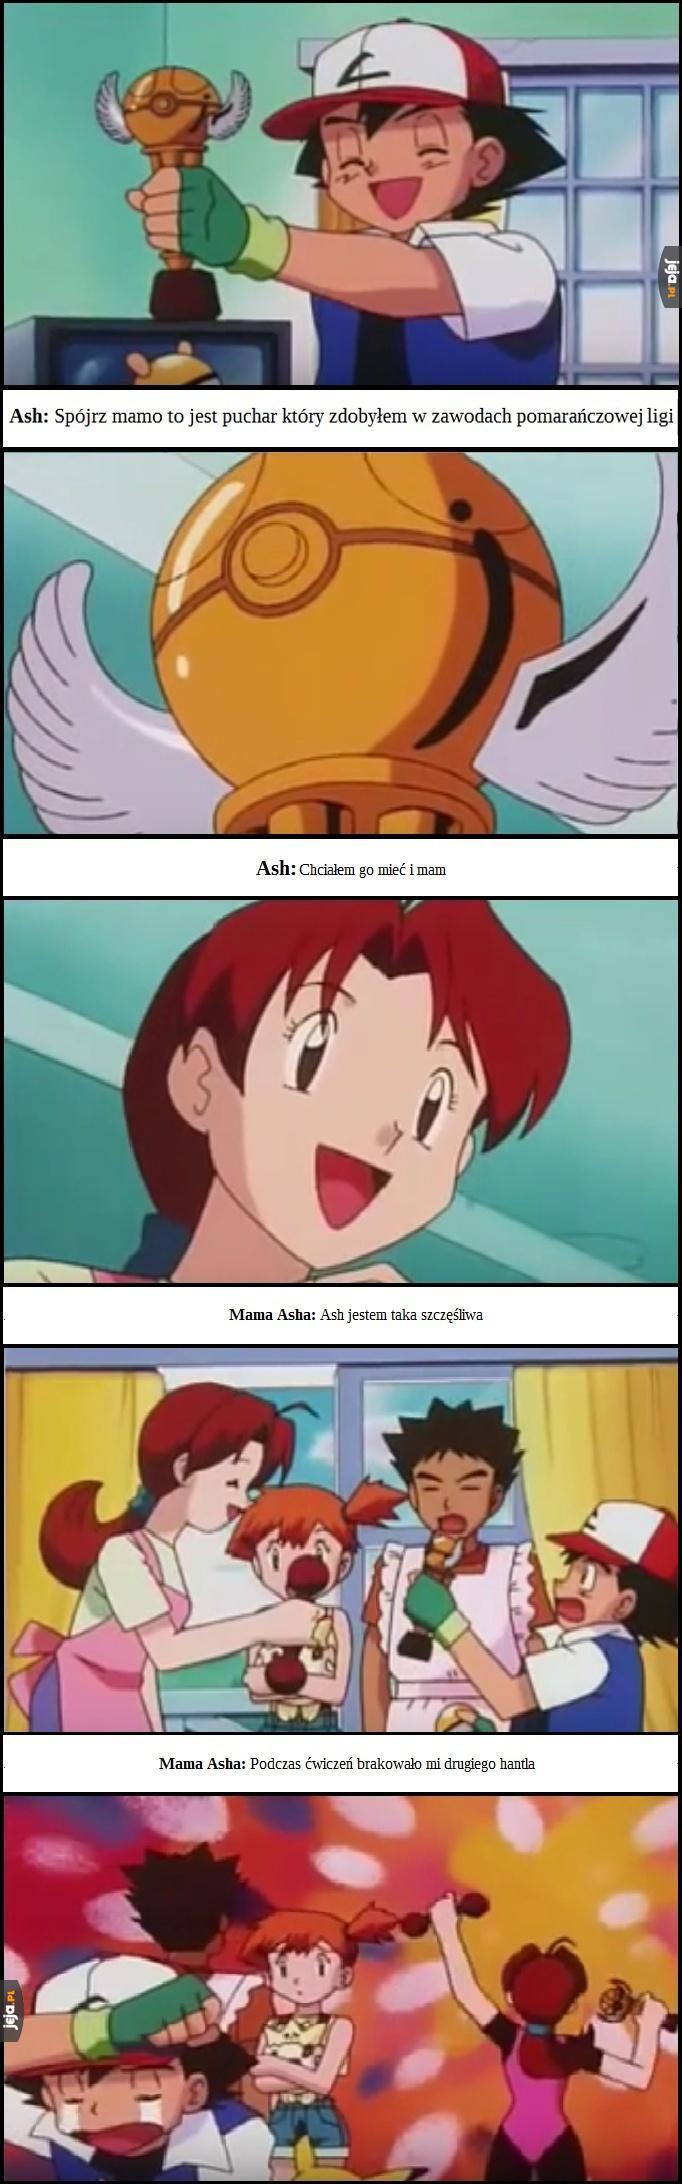 Ash musiał mieć trudne dzieciństwo